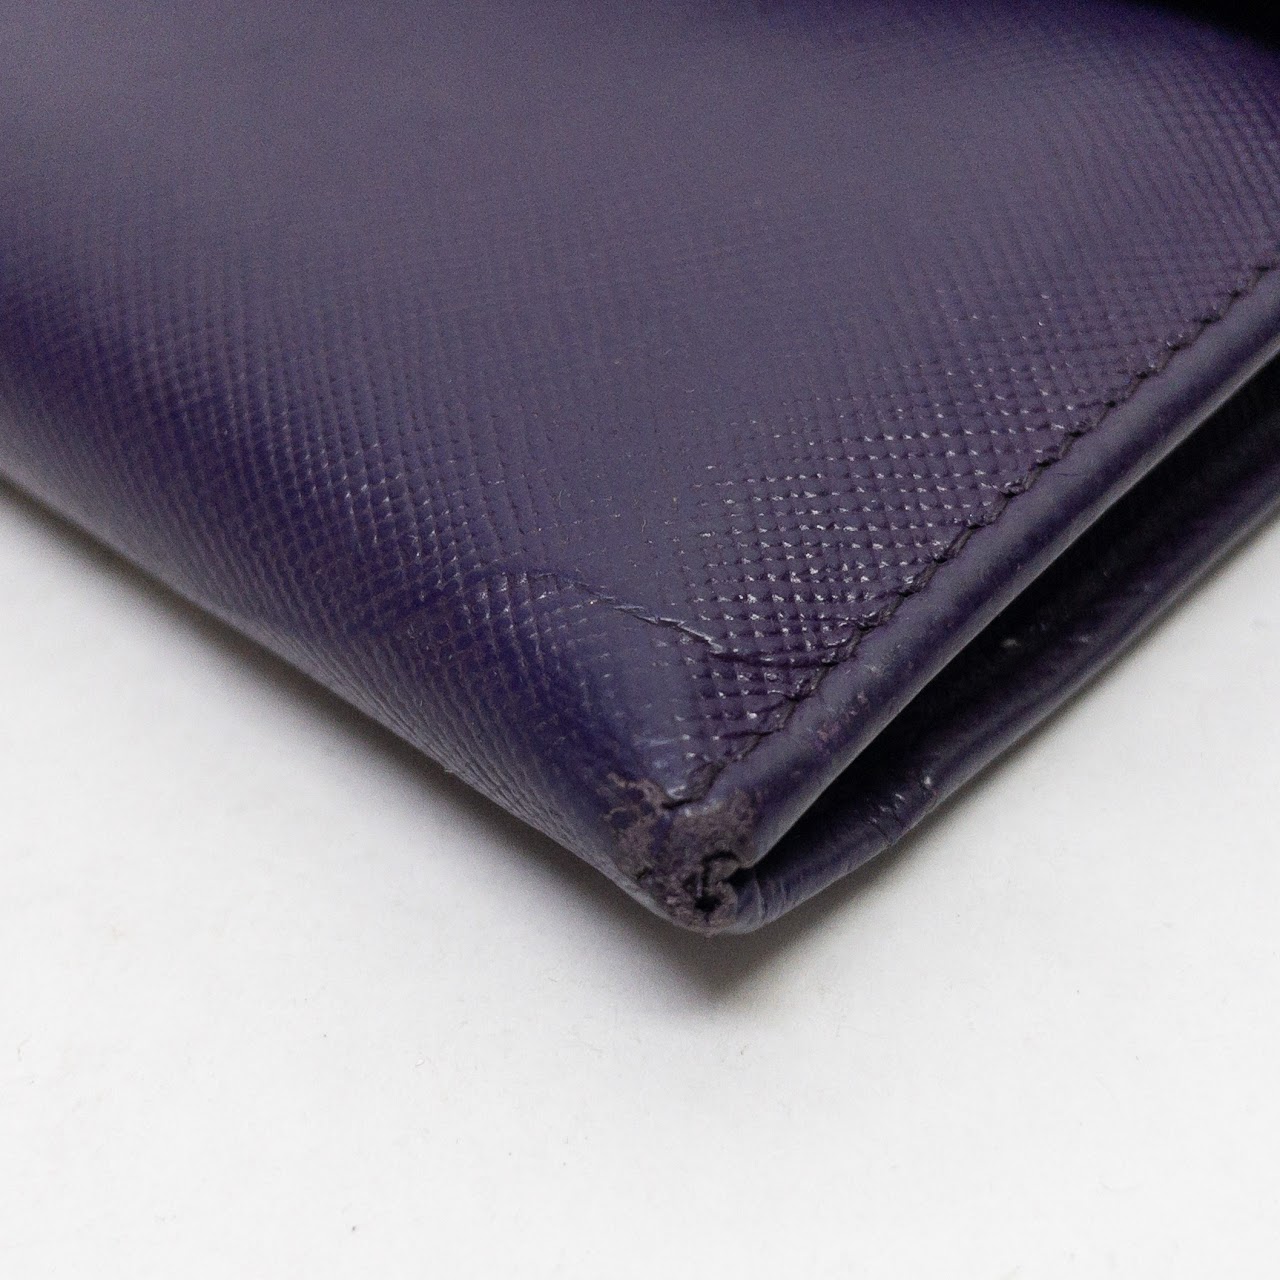 Prada Leather Tri-Fold Wallet